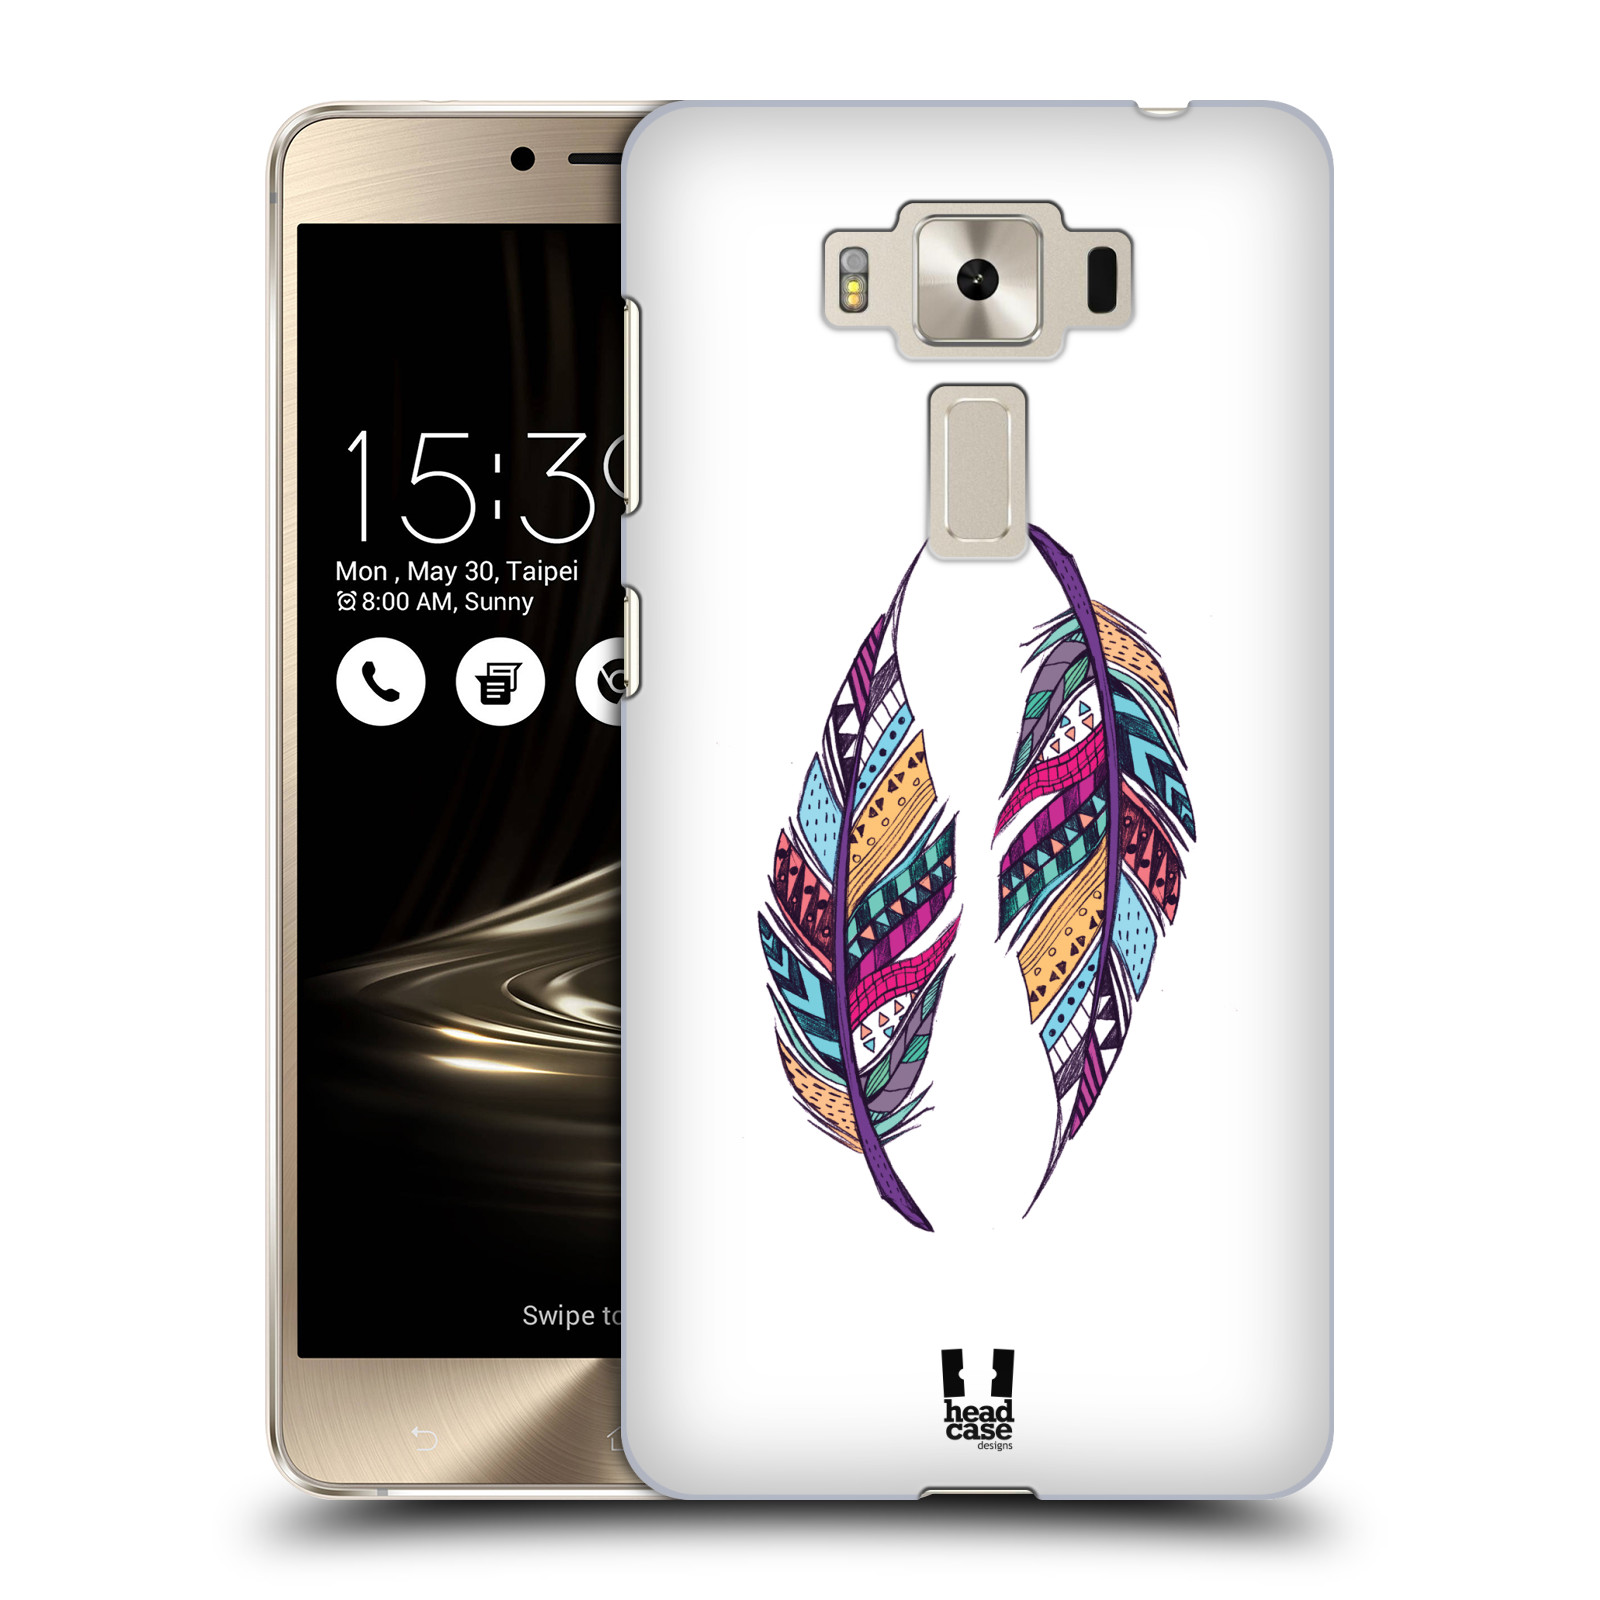 HEAD CASE plastový obal na mobil Asus Zenfone 3 DELUXE ZS550KL vzor Aztécká pírka PÁR